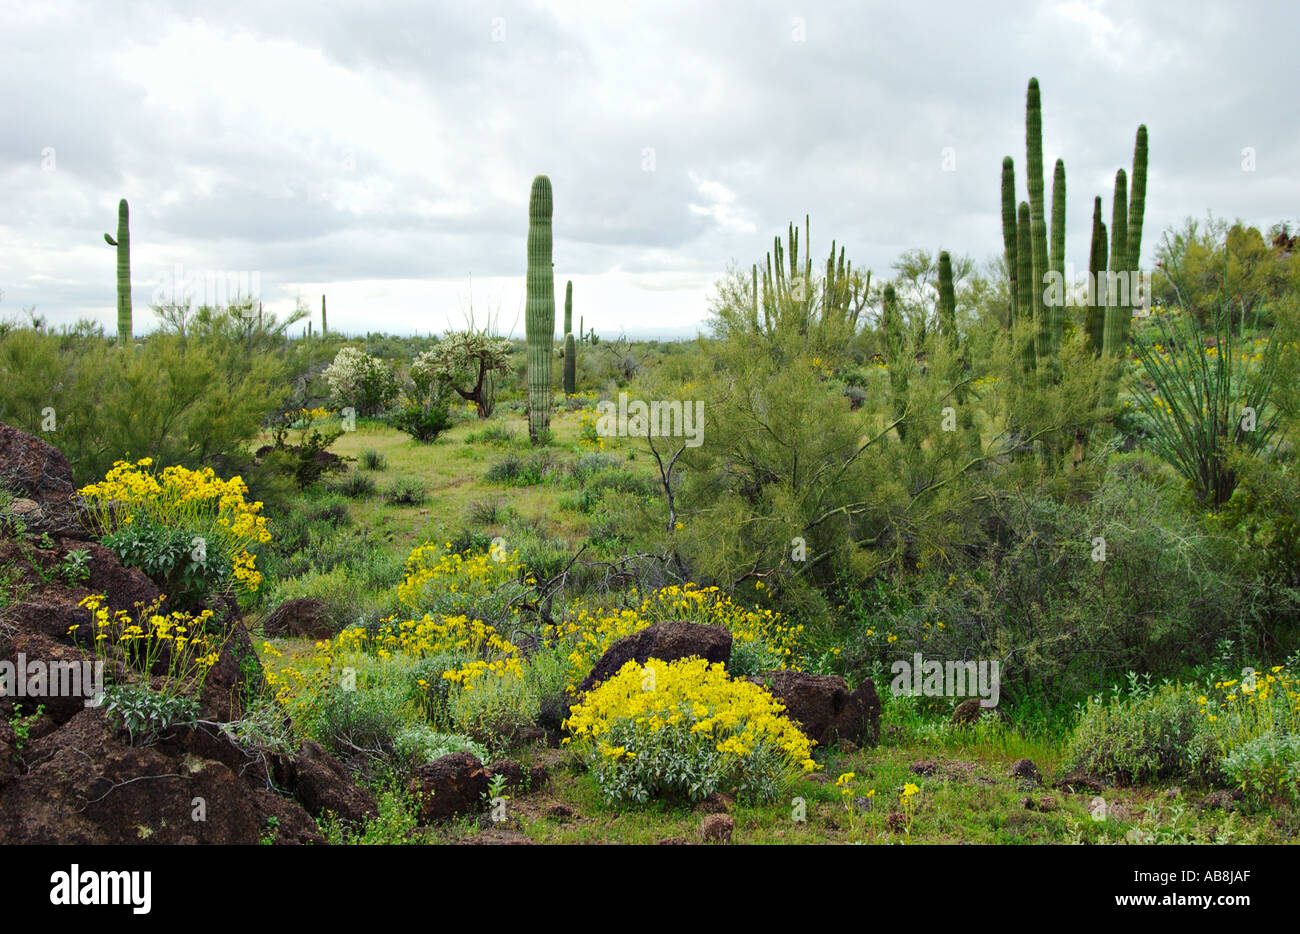 Jardin de cactus et de fleurs sauvages dans la région de Organ Pipe Cactus National Monument Arizona USA Banque D'Images